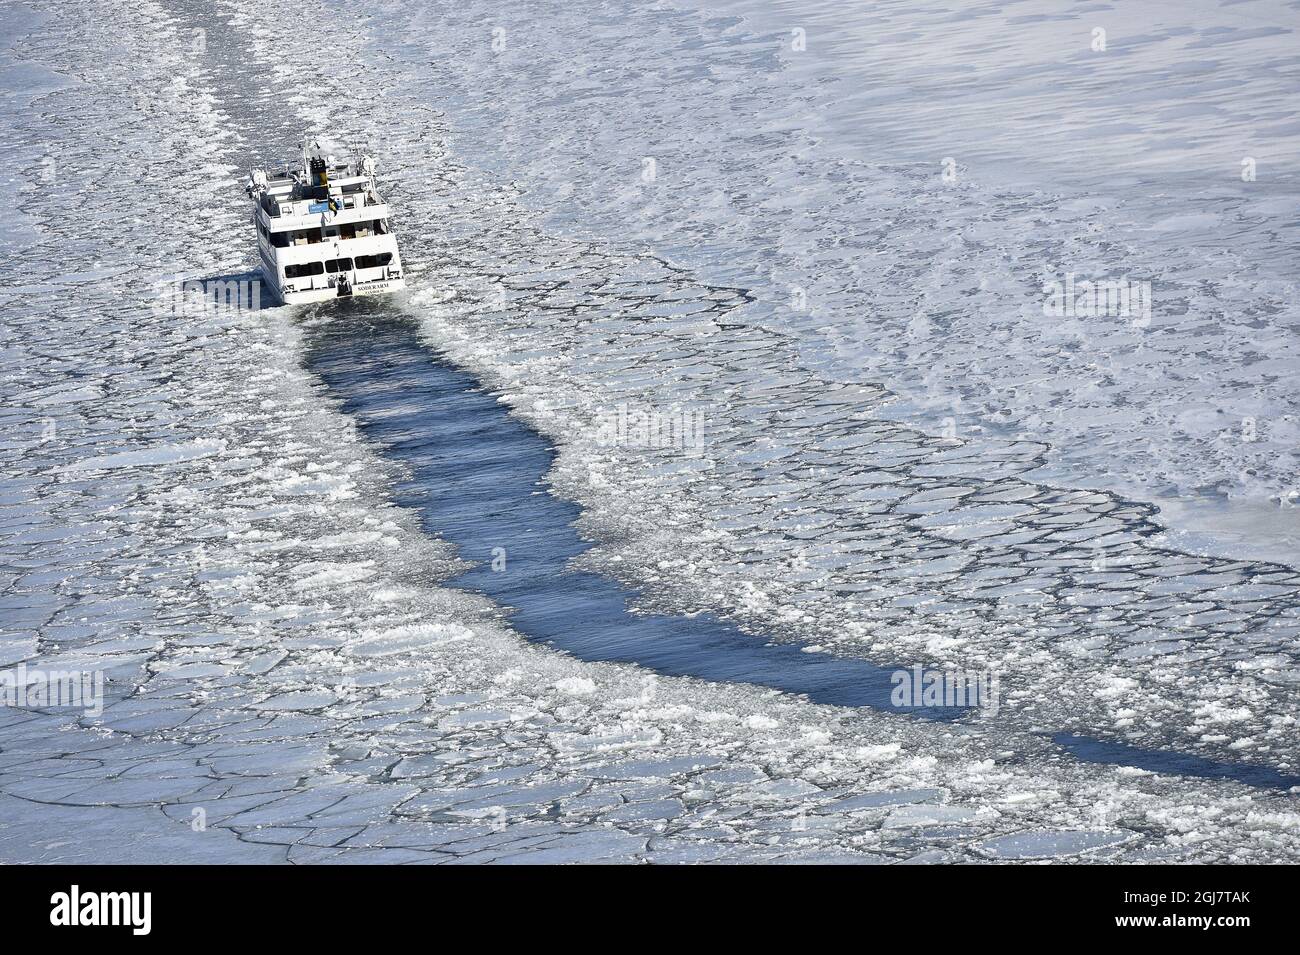 STOCKHOLM 2013-04-05 le ferry Soderarm est vu se rendre à travers un canal de glace brisé jusqu'à l'île Husaro dans l'archipel de Stockholm le vendredi 4 avril 2013. SMHI, l’agence gouvernementale suédoise chargée des prévisions météorologiques et du climat, signale qu’il y a une propagation record de glace autour des côtes de la Suède à la fin de l’hiver. Au début, les prévisionnistes s'attendaient à ce que la glace sur la mer Baltique atteigne son maximum fin janvier, mais une période prolongée de haute pression qui est arrivée début mars a provoqué la formation de nouvelles glaces à la fin de la saison, ce qui a donné lieu à une date record. Anders Wiklund / SCANPIX / Banque D'Images